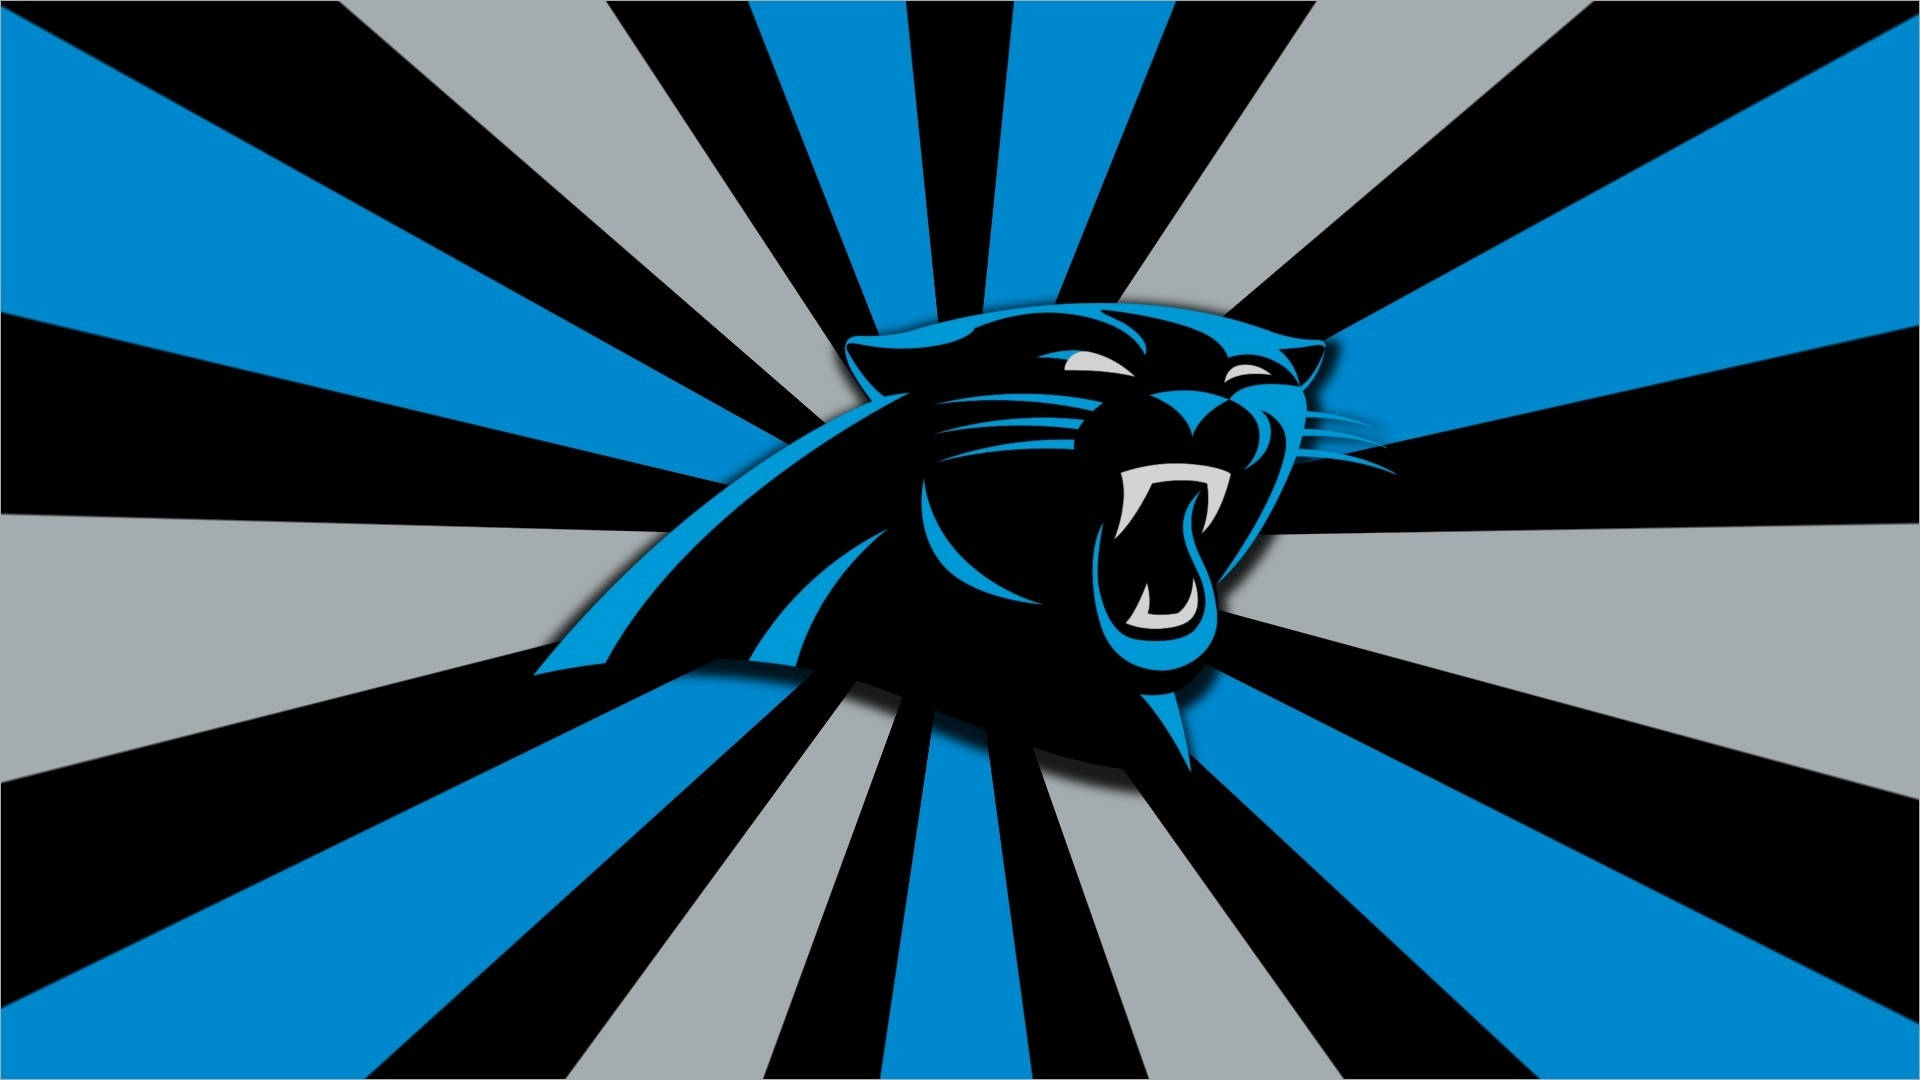 Carolina Panthers Blue, Black, White Background